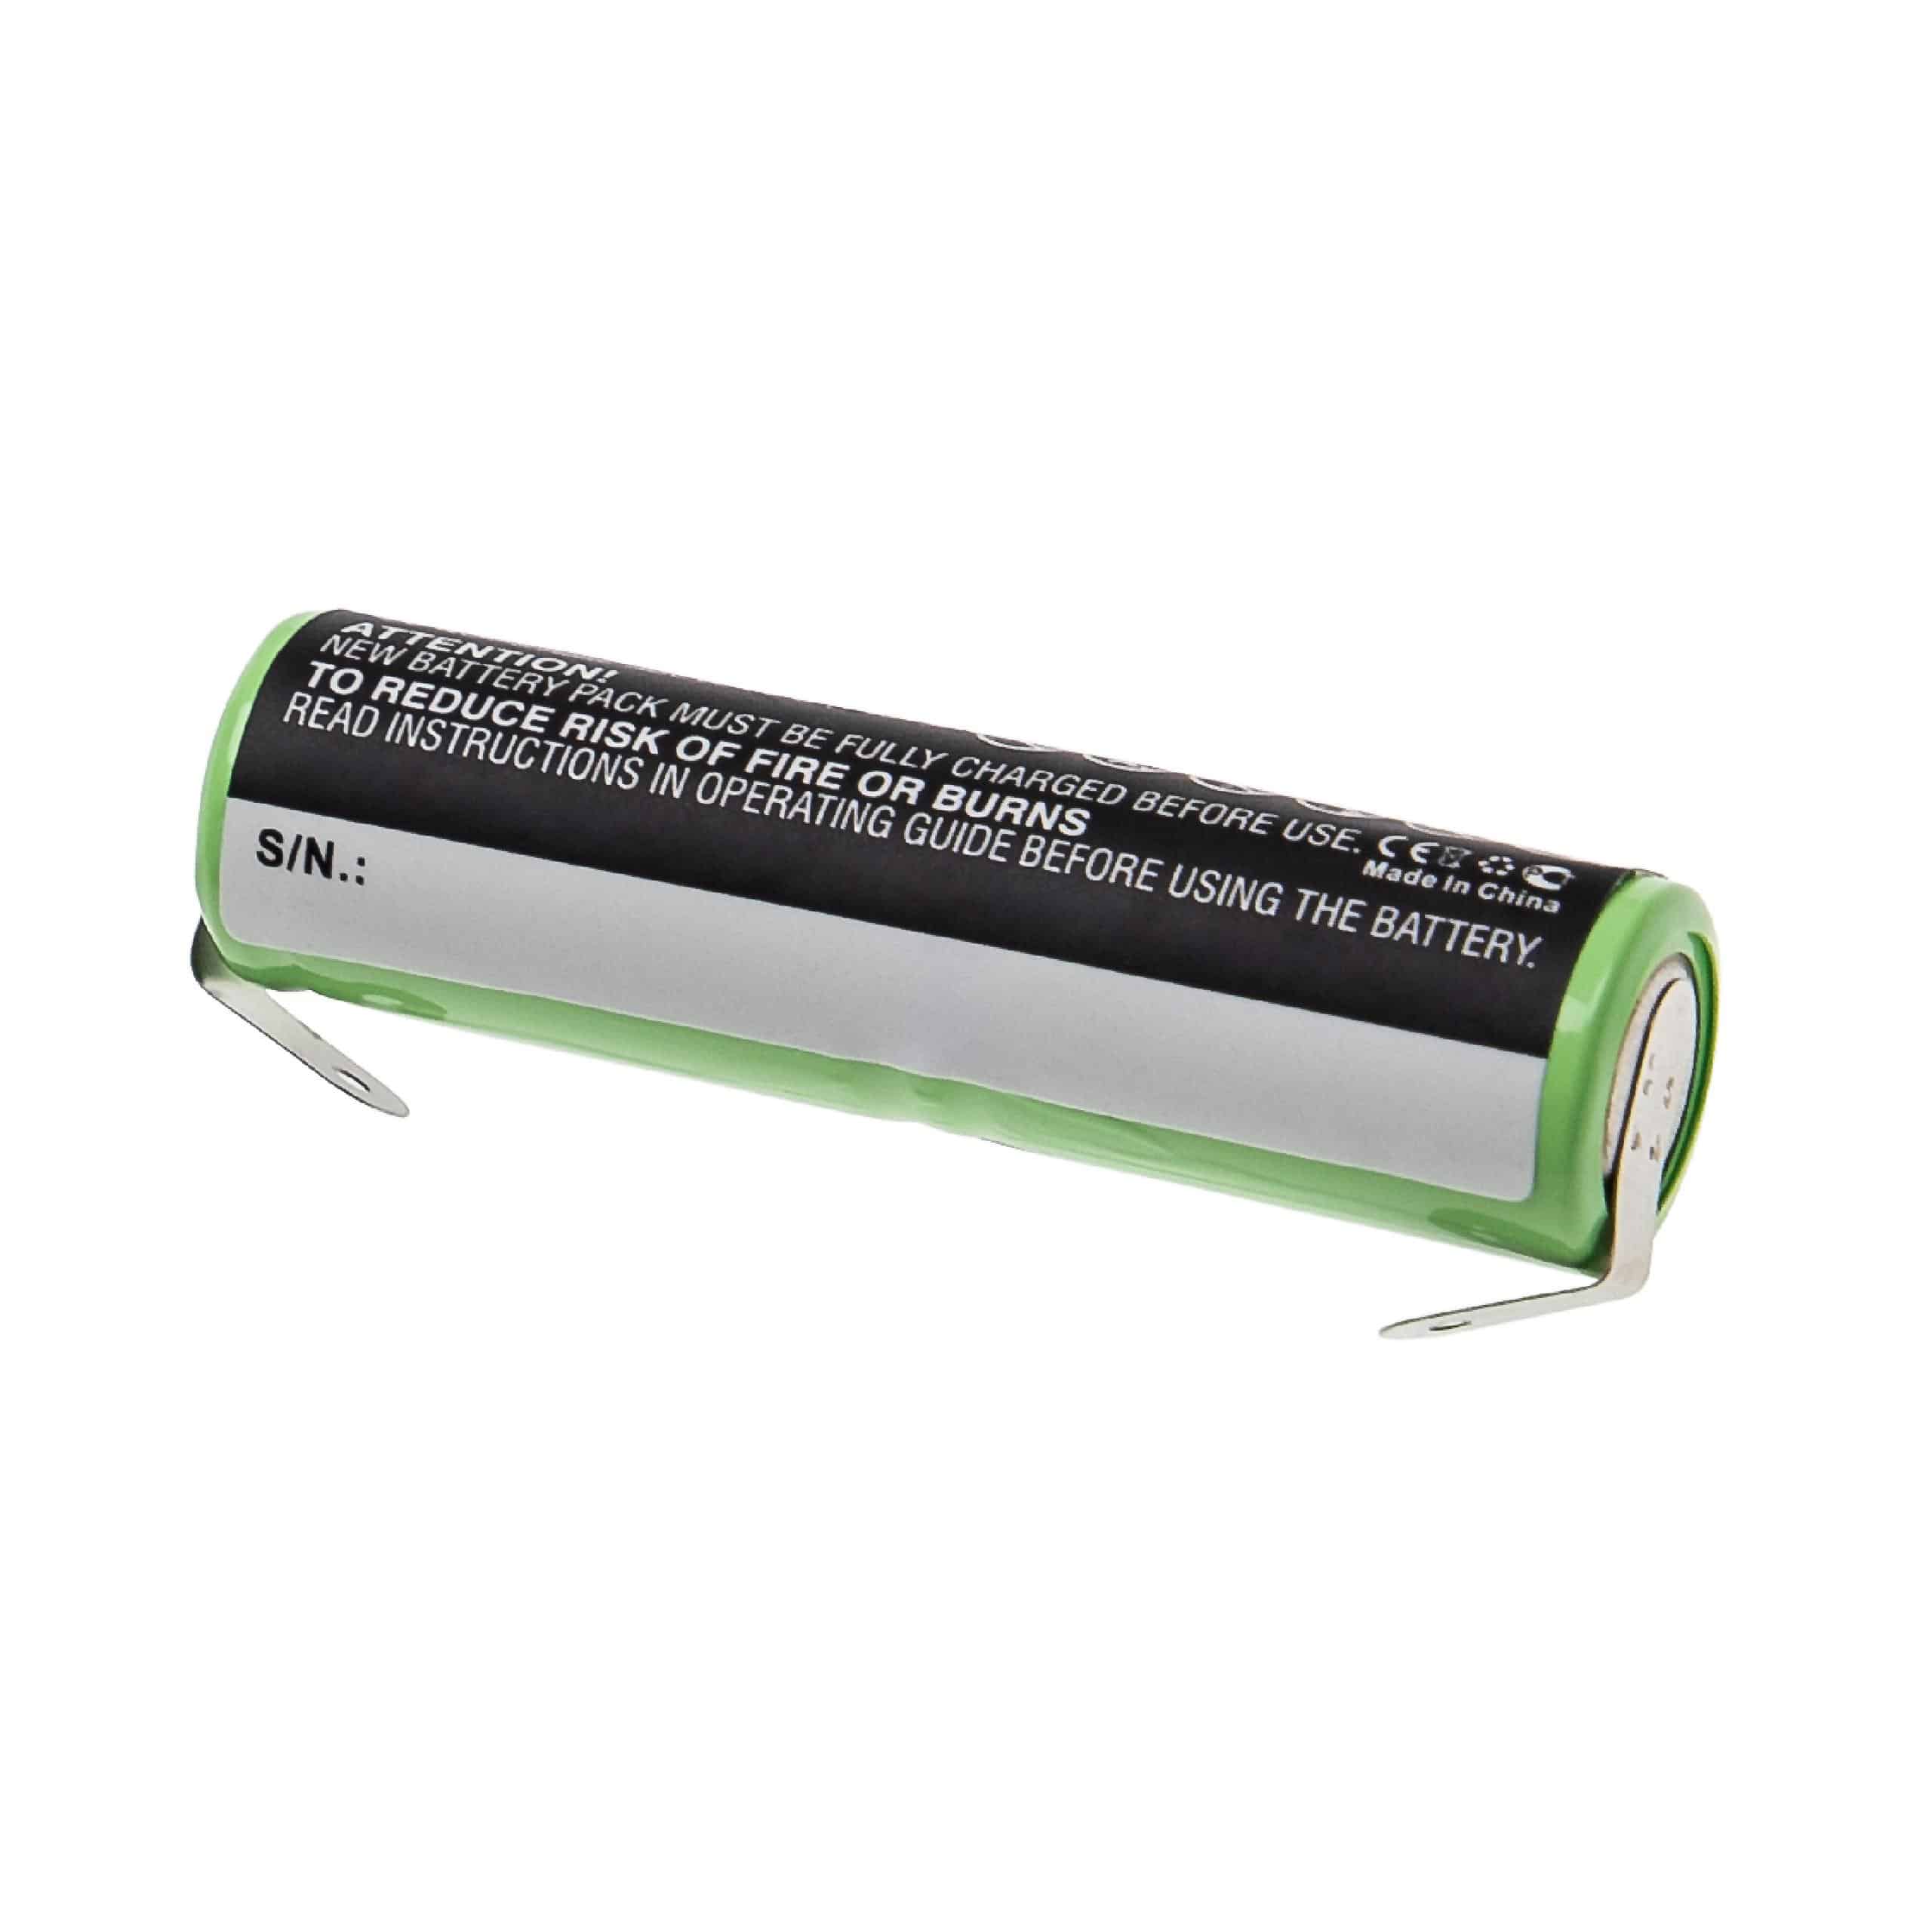 Batería reemplaza Omron GP75AAH2A1H para cepillo dientes eléctrico Omron - 600 mAh 2,4 V NiMH